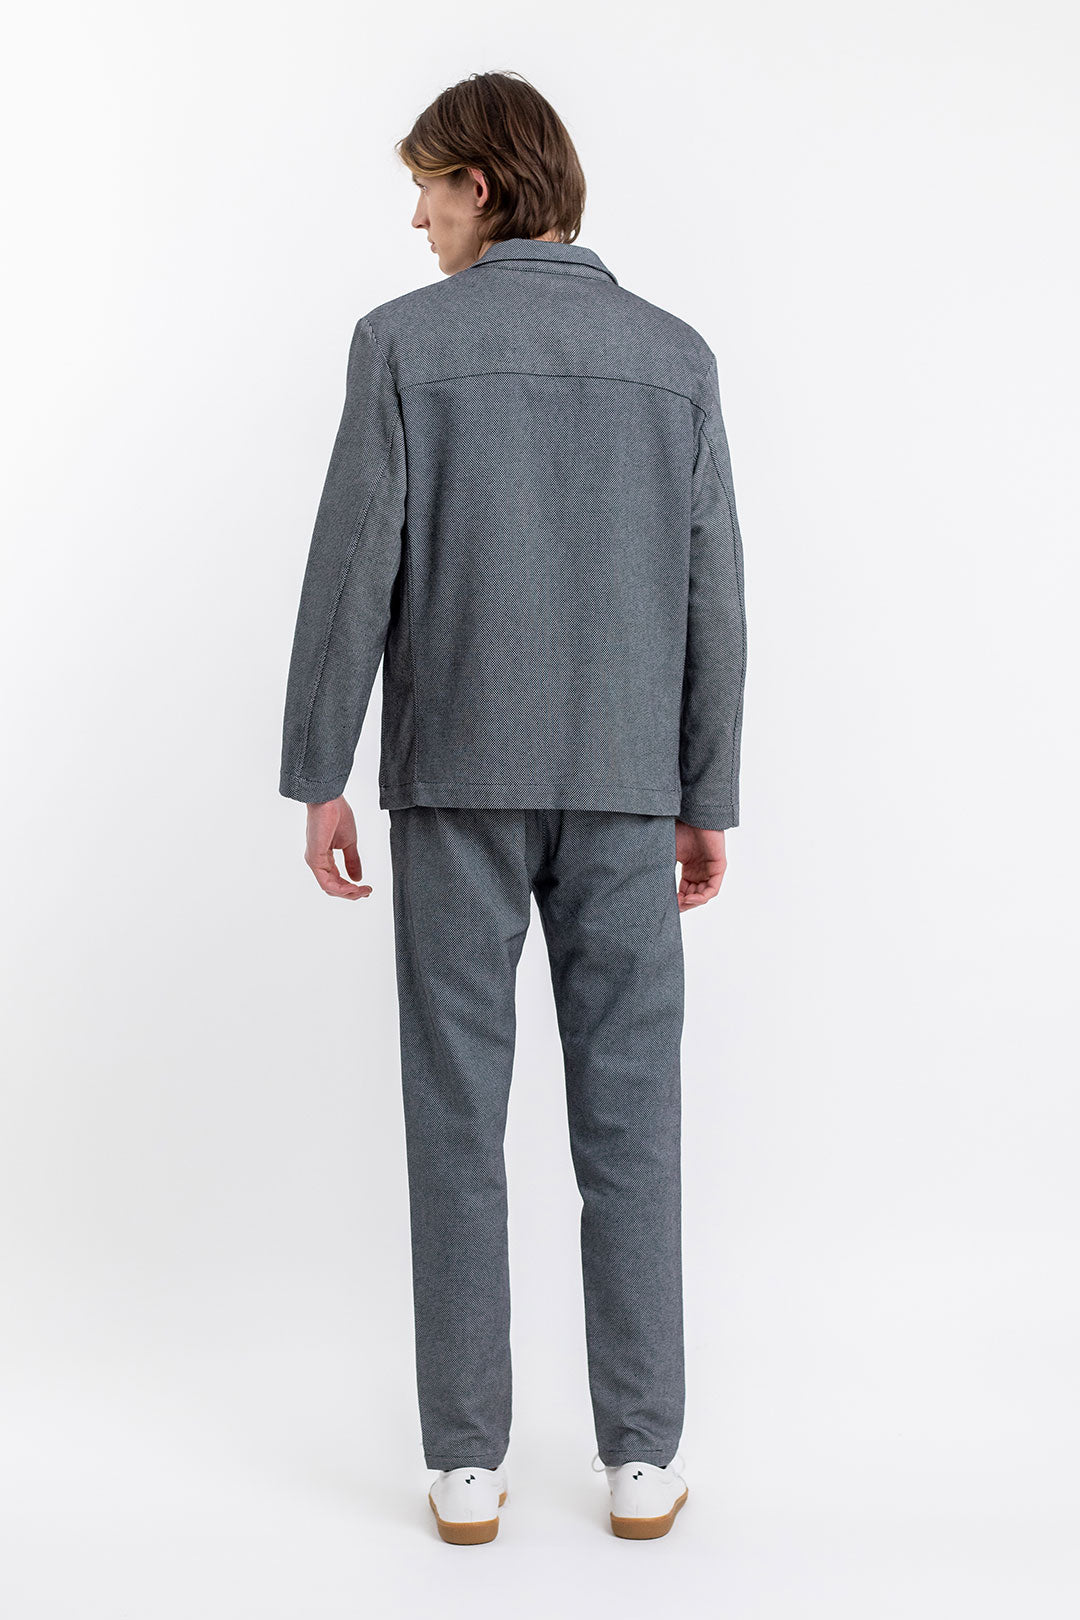 Vêtements de travail blazer à carreaux gris en coton 100% biologique de Rotholz